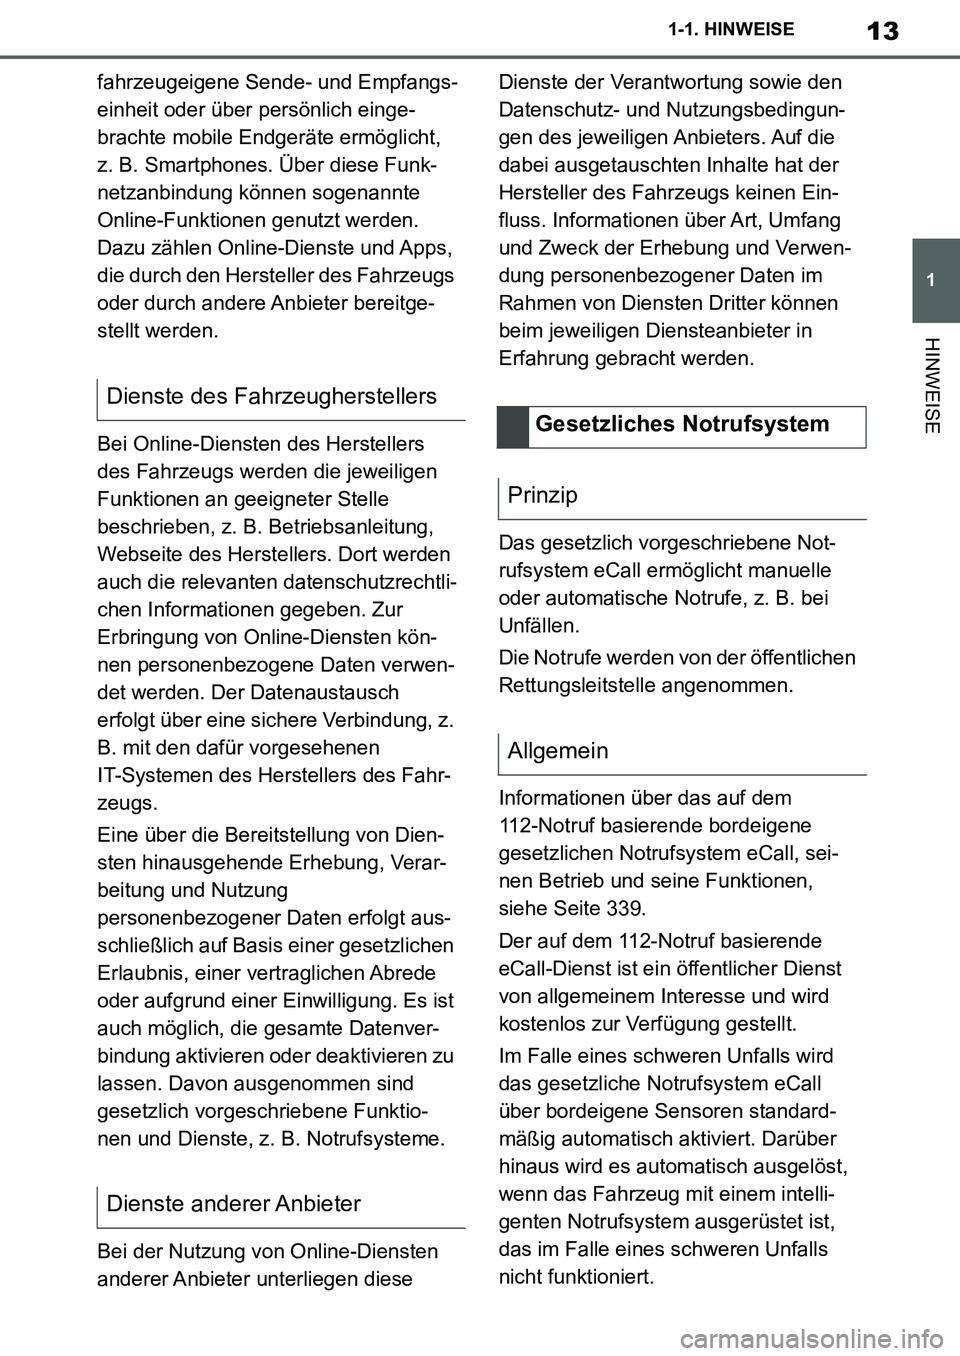 TOYOTA SUPRA 2020  Betriebsanleitungen (in German) 13
1
Supra Owners Manual_EM
1-1. HINWEISE
HINWEISE
fahrzeugeigene Sende- und Empfangs-
einheit oder über persönlich einge-
brachte mobile Endgeräte ermöglicht, 
z. B. Smartphones. Über diese Fun